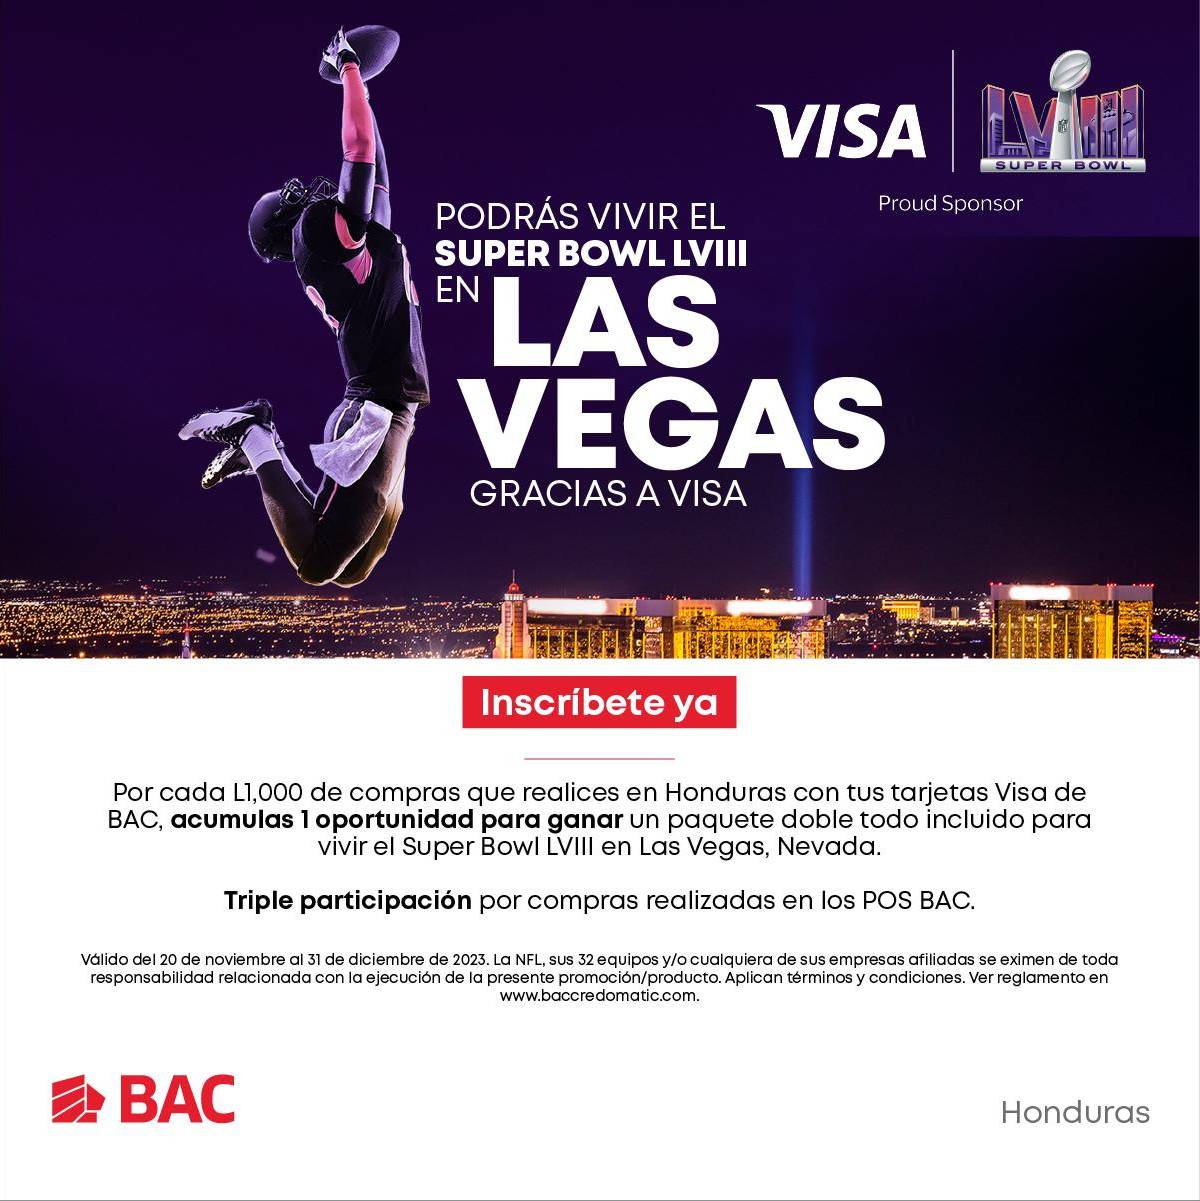 Podrás vivir el Super Bowl LVIII en Las Vegas, Nevada: ¡Gracias a Visa y BAC!